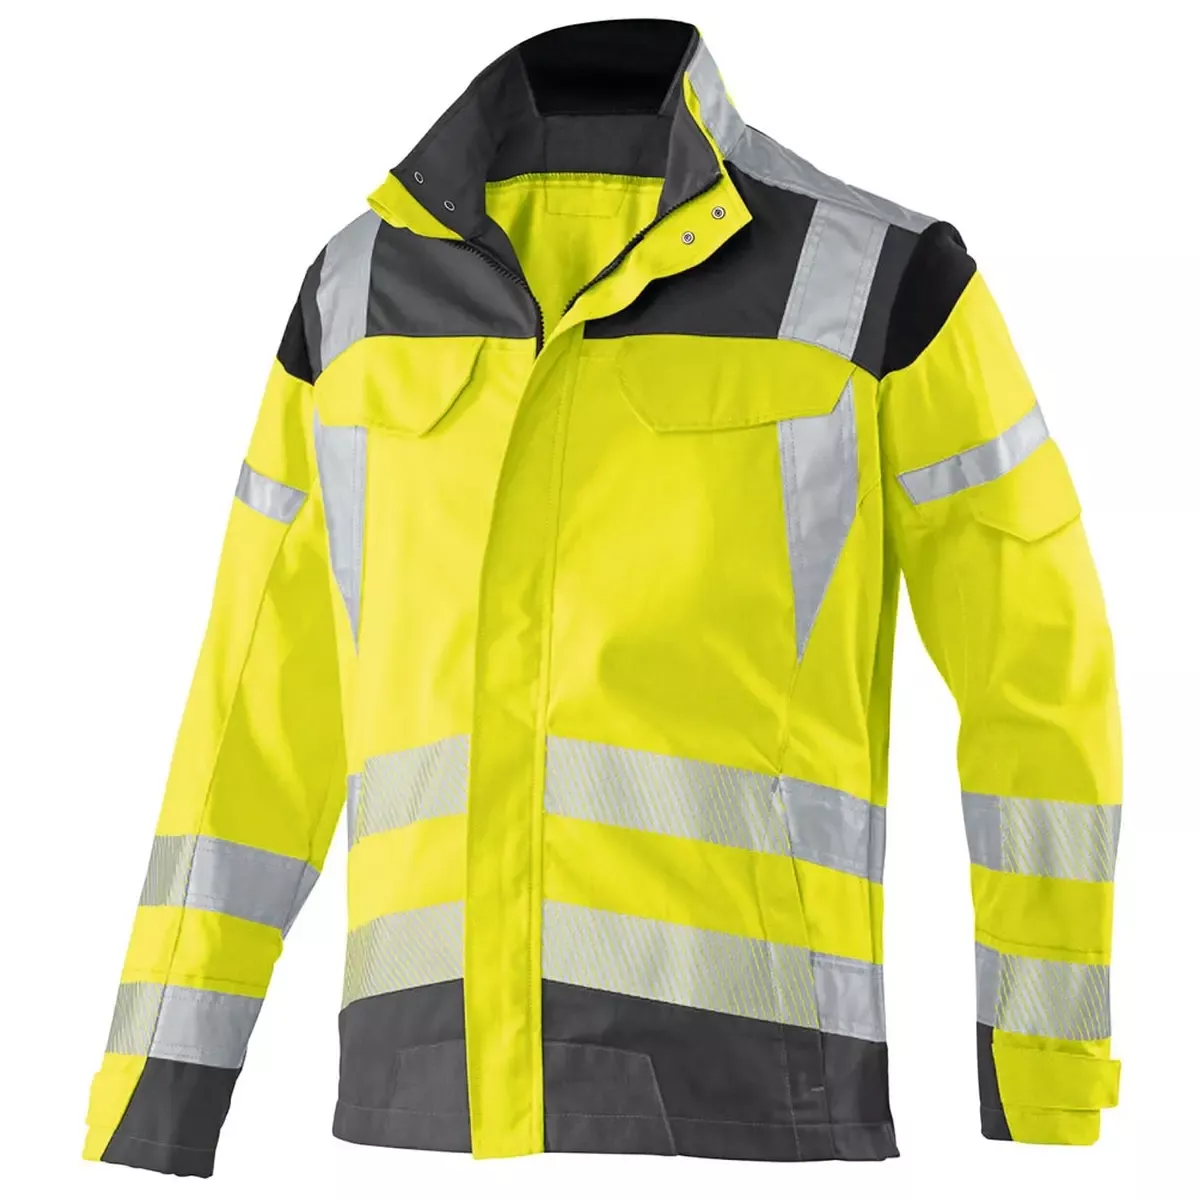 Bekleidung Warnschutz-Bundjacke REFLECTIQ, Farbe warngelb anthrazit, Gr.54 für Arbeitssicherheit